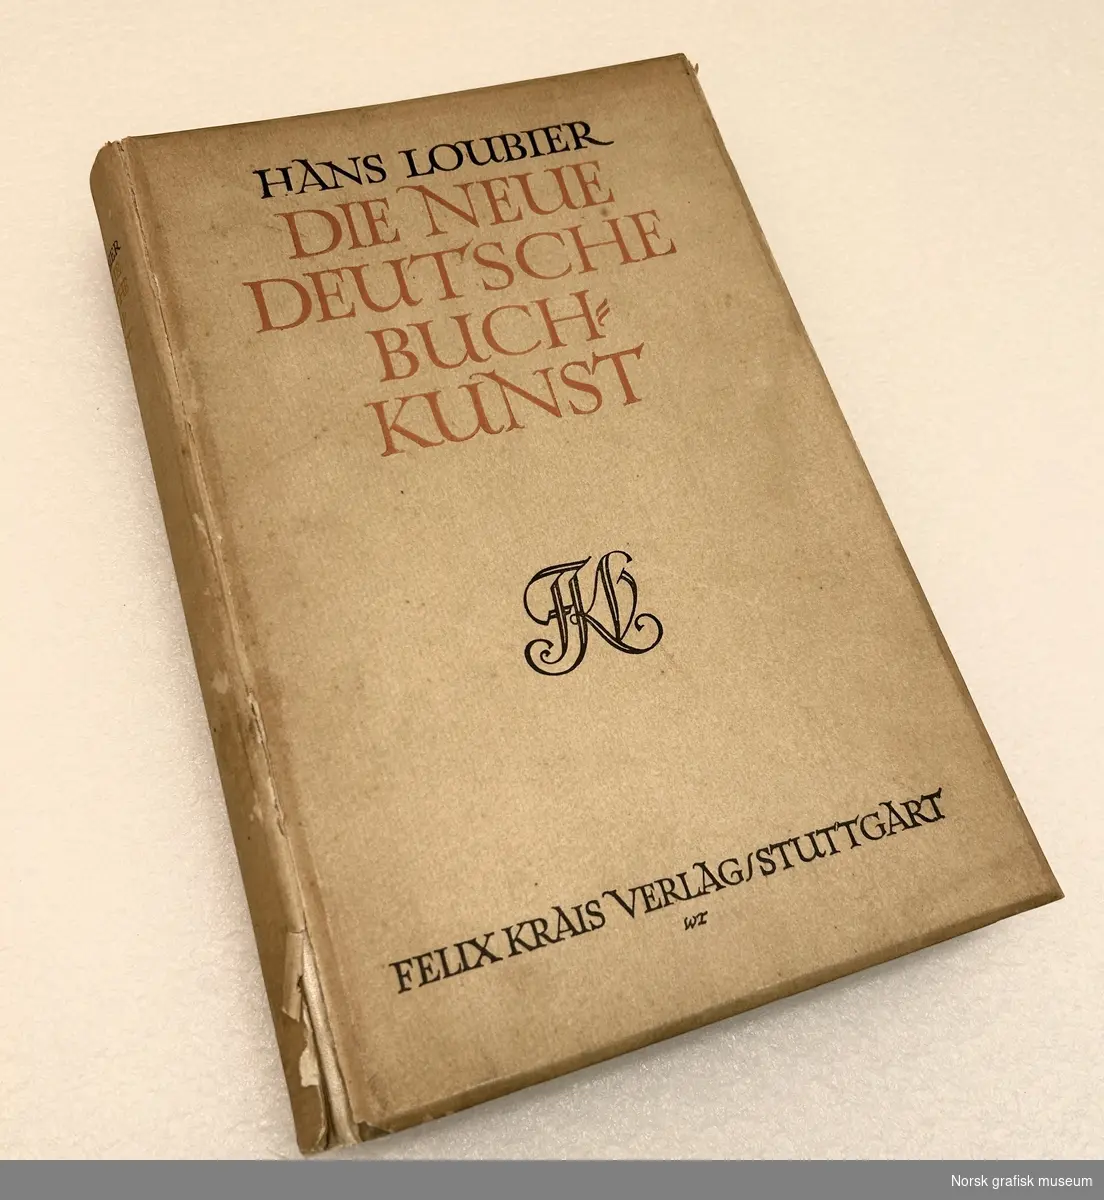 Bok om tysk bokkunst av Hans Loubier. Trykt av Felix Krais Verlag, Stuttgart.